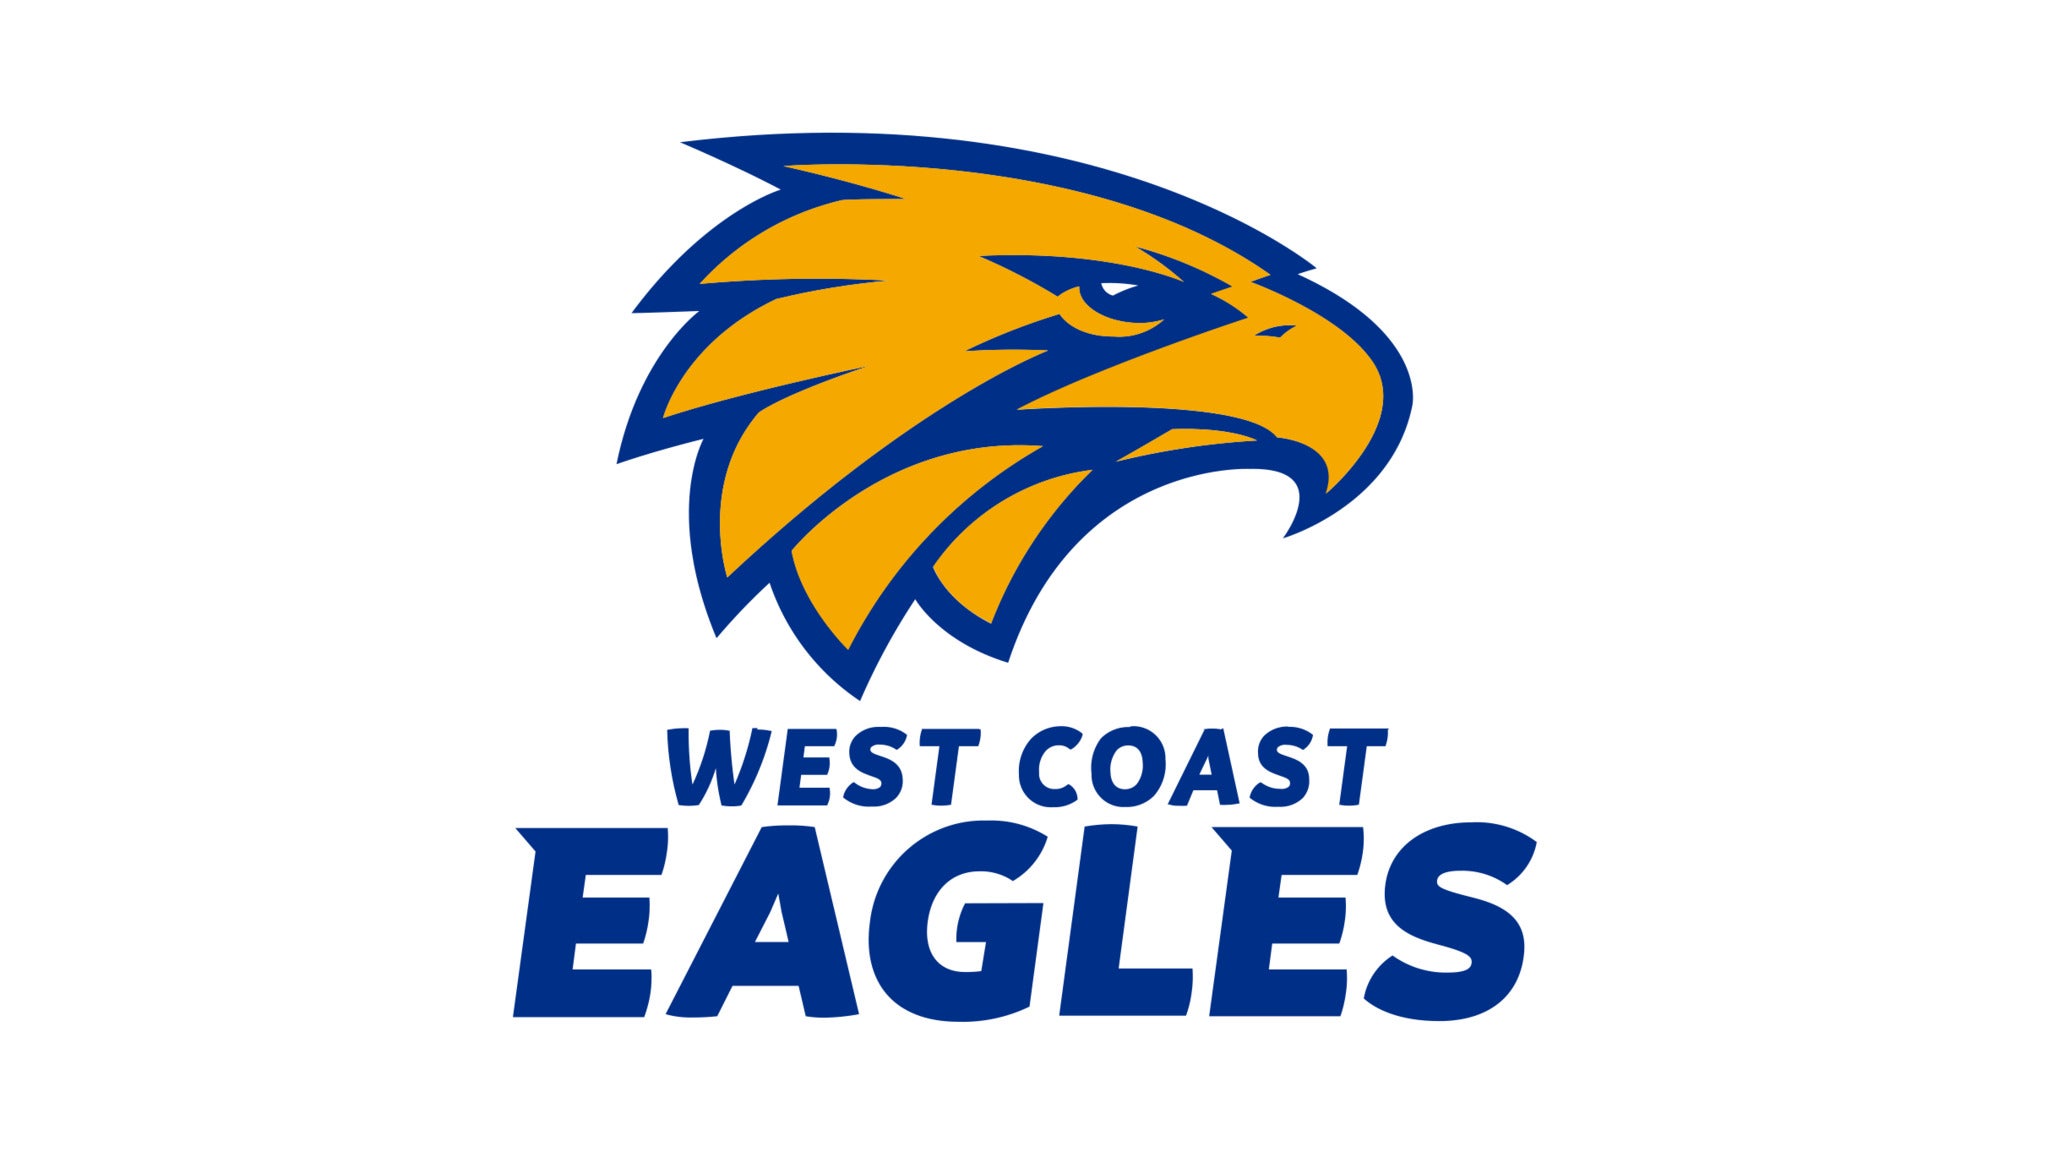 West Coast Eagles presale information on freepresalepasswords.com